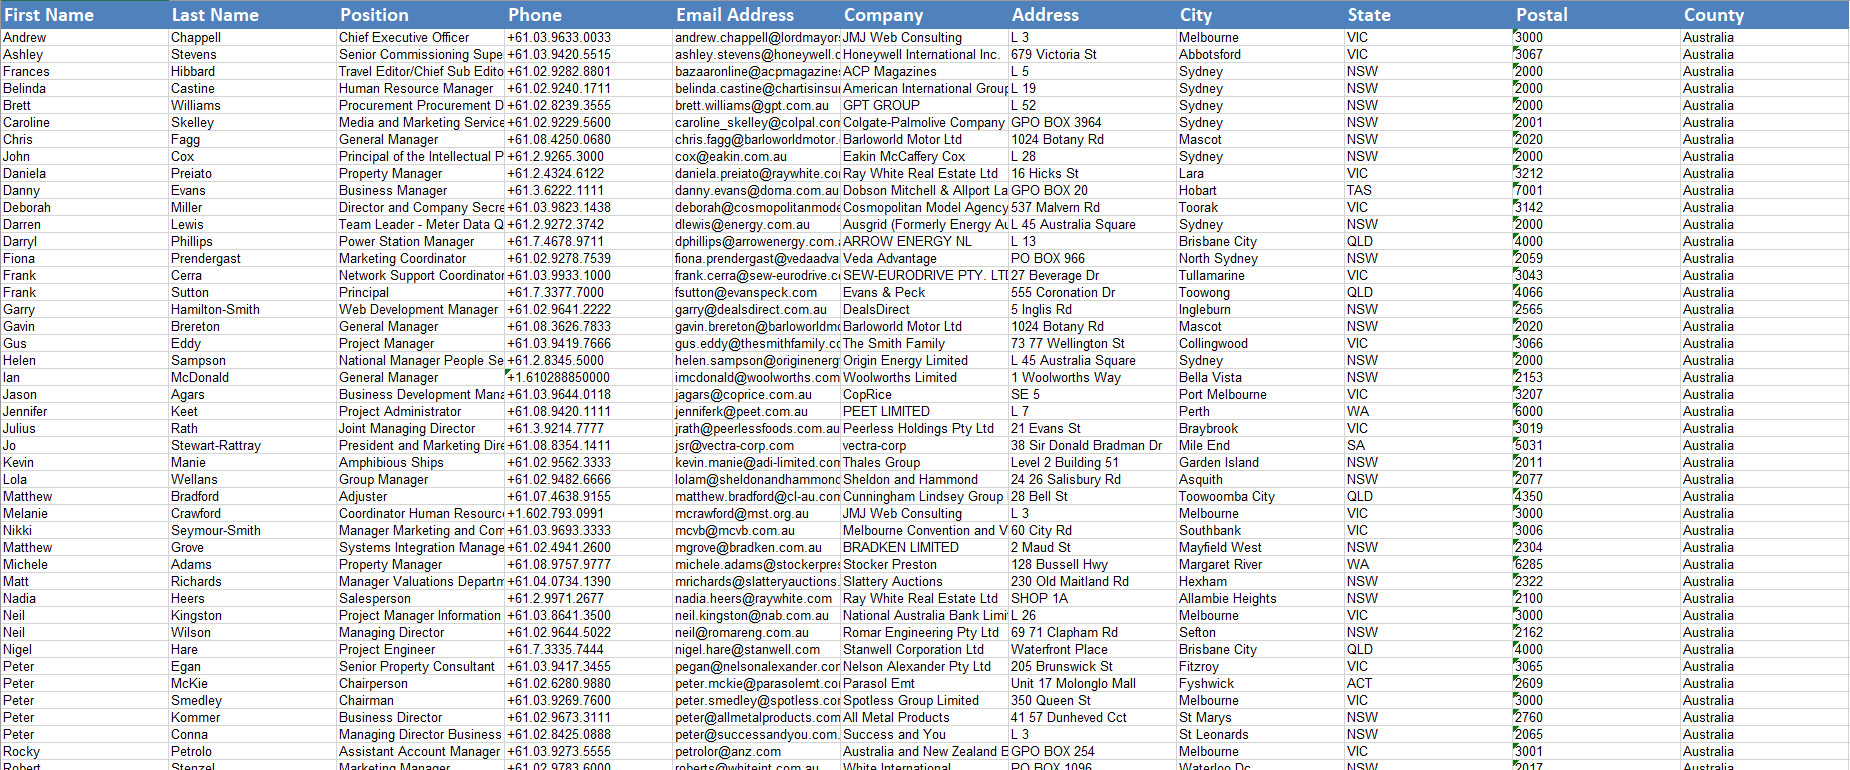 Australia Email Database Data Sample